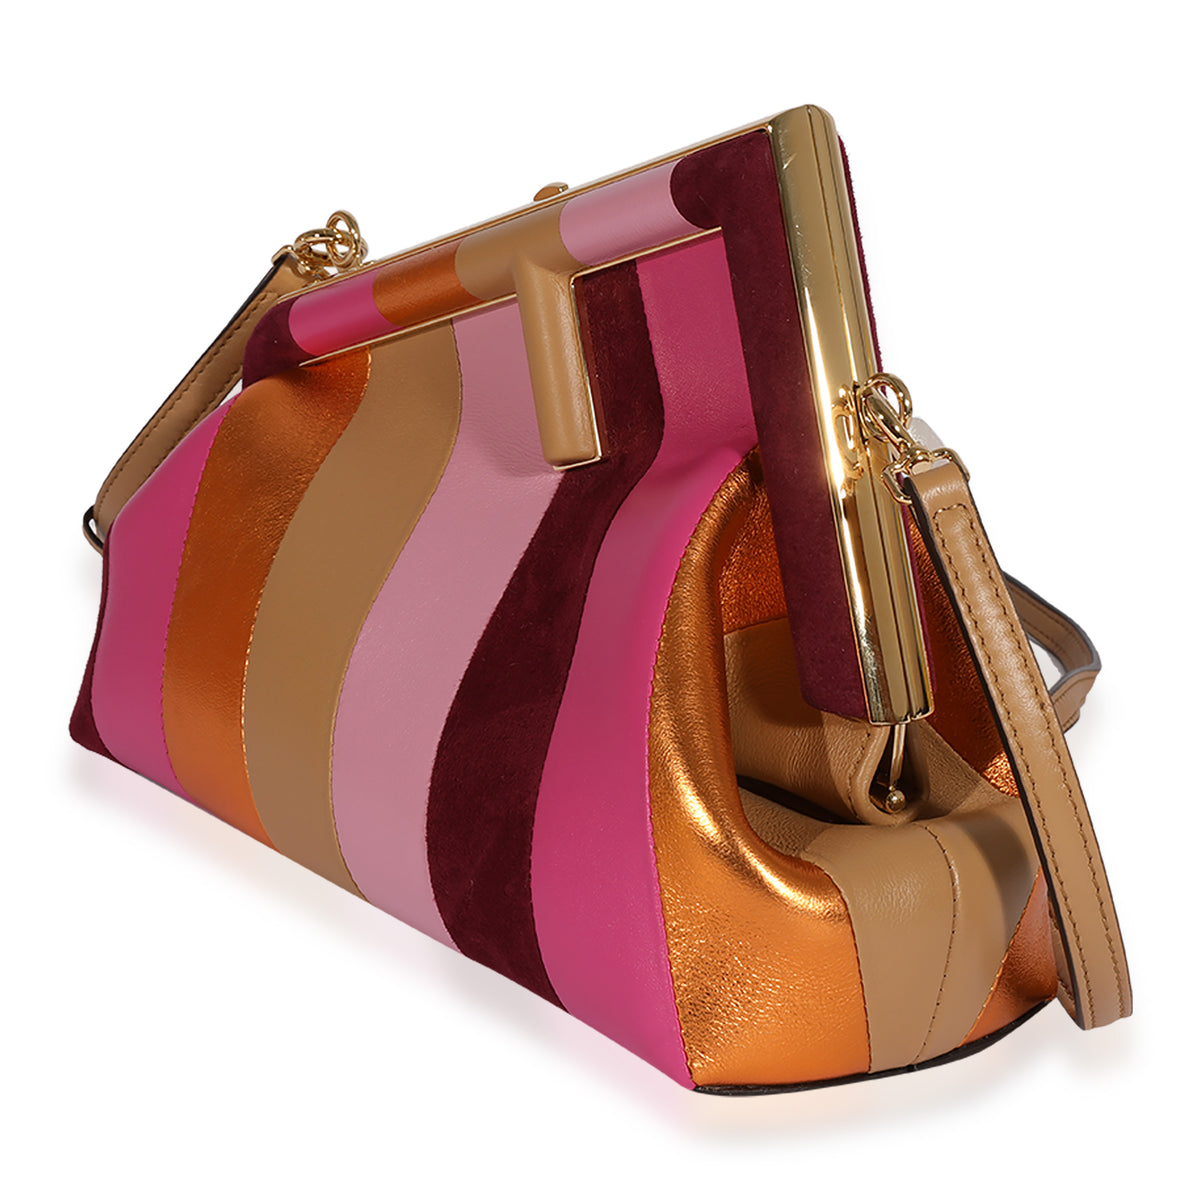 Designer Suede Handbags & Bags, myGemma